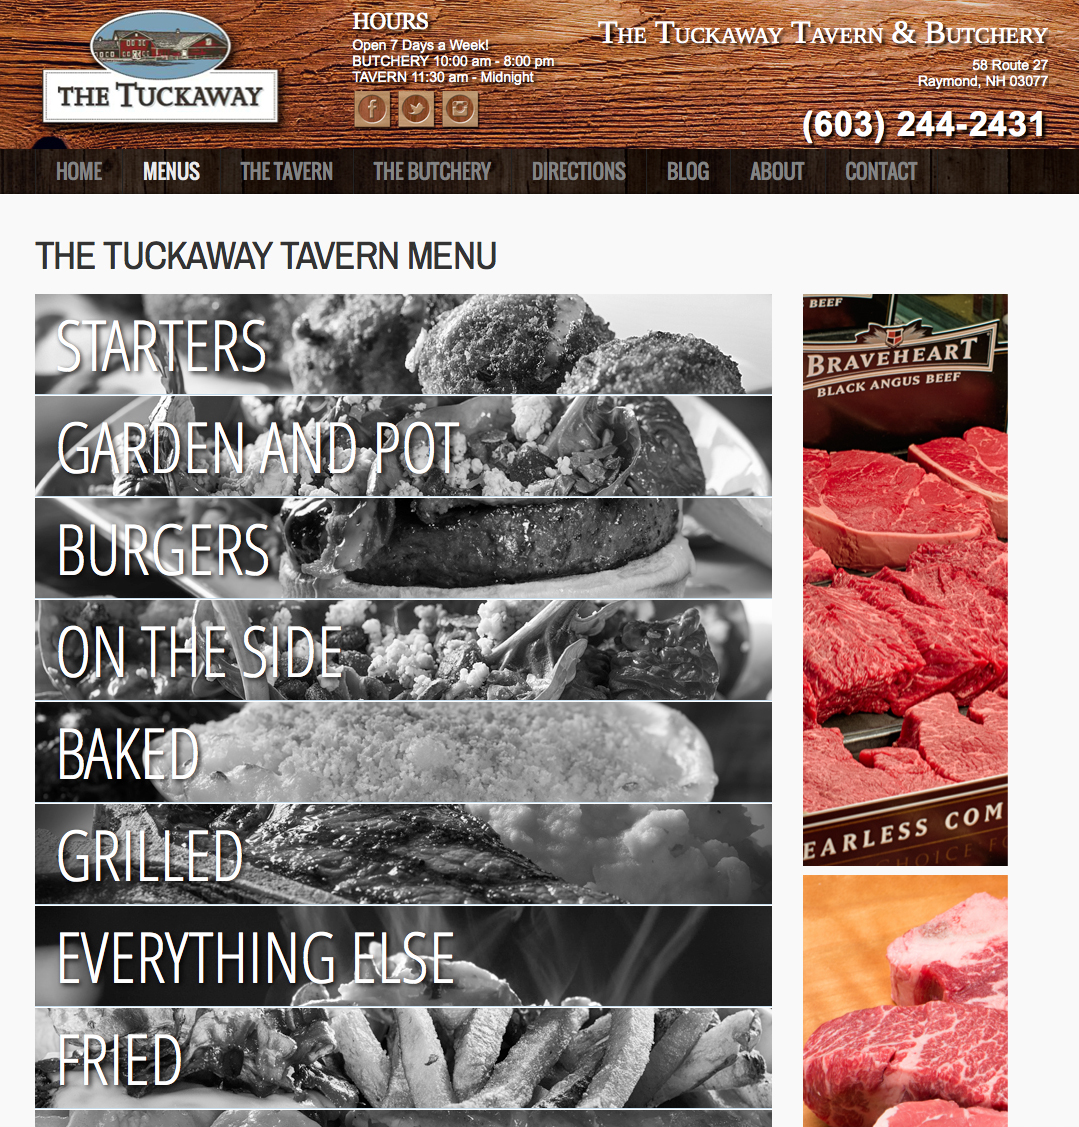 The Tuckaway Tavern & Butchery